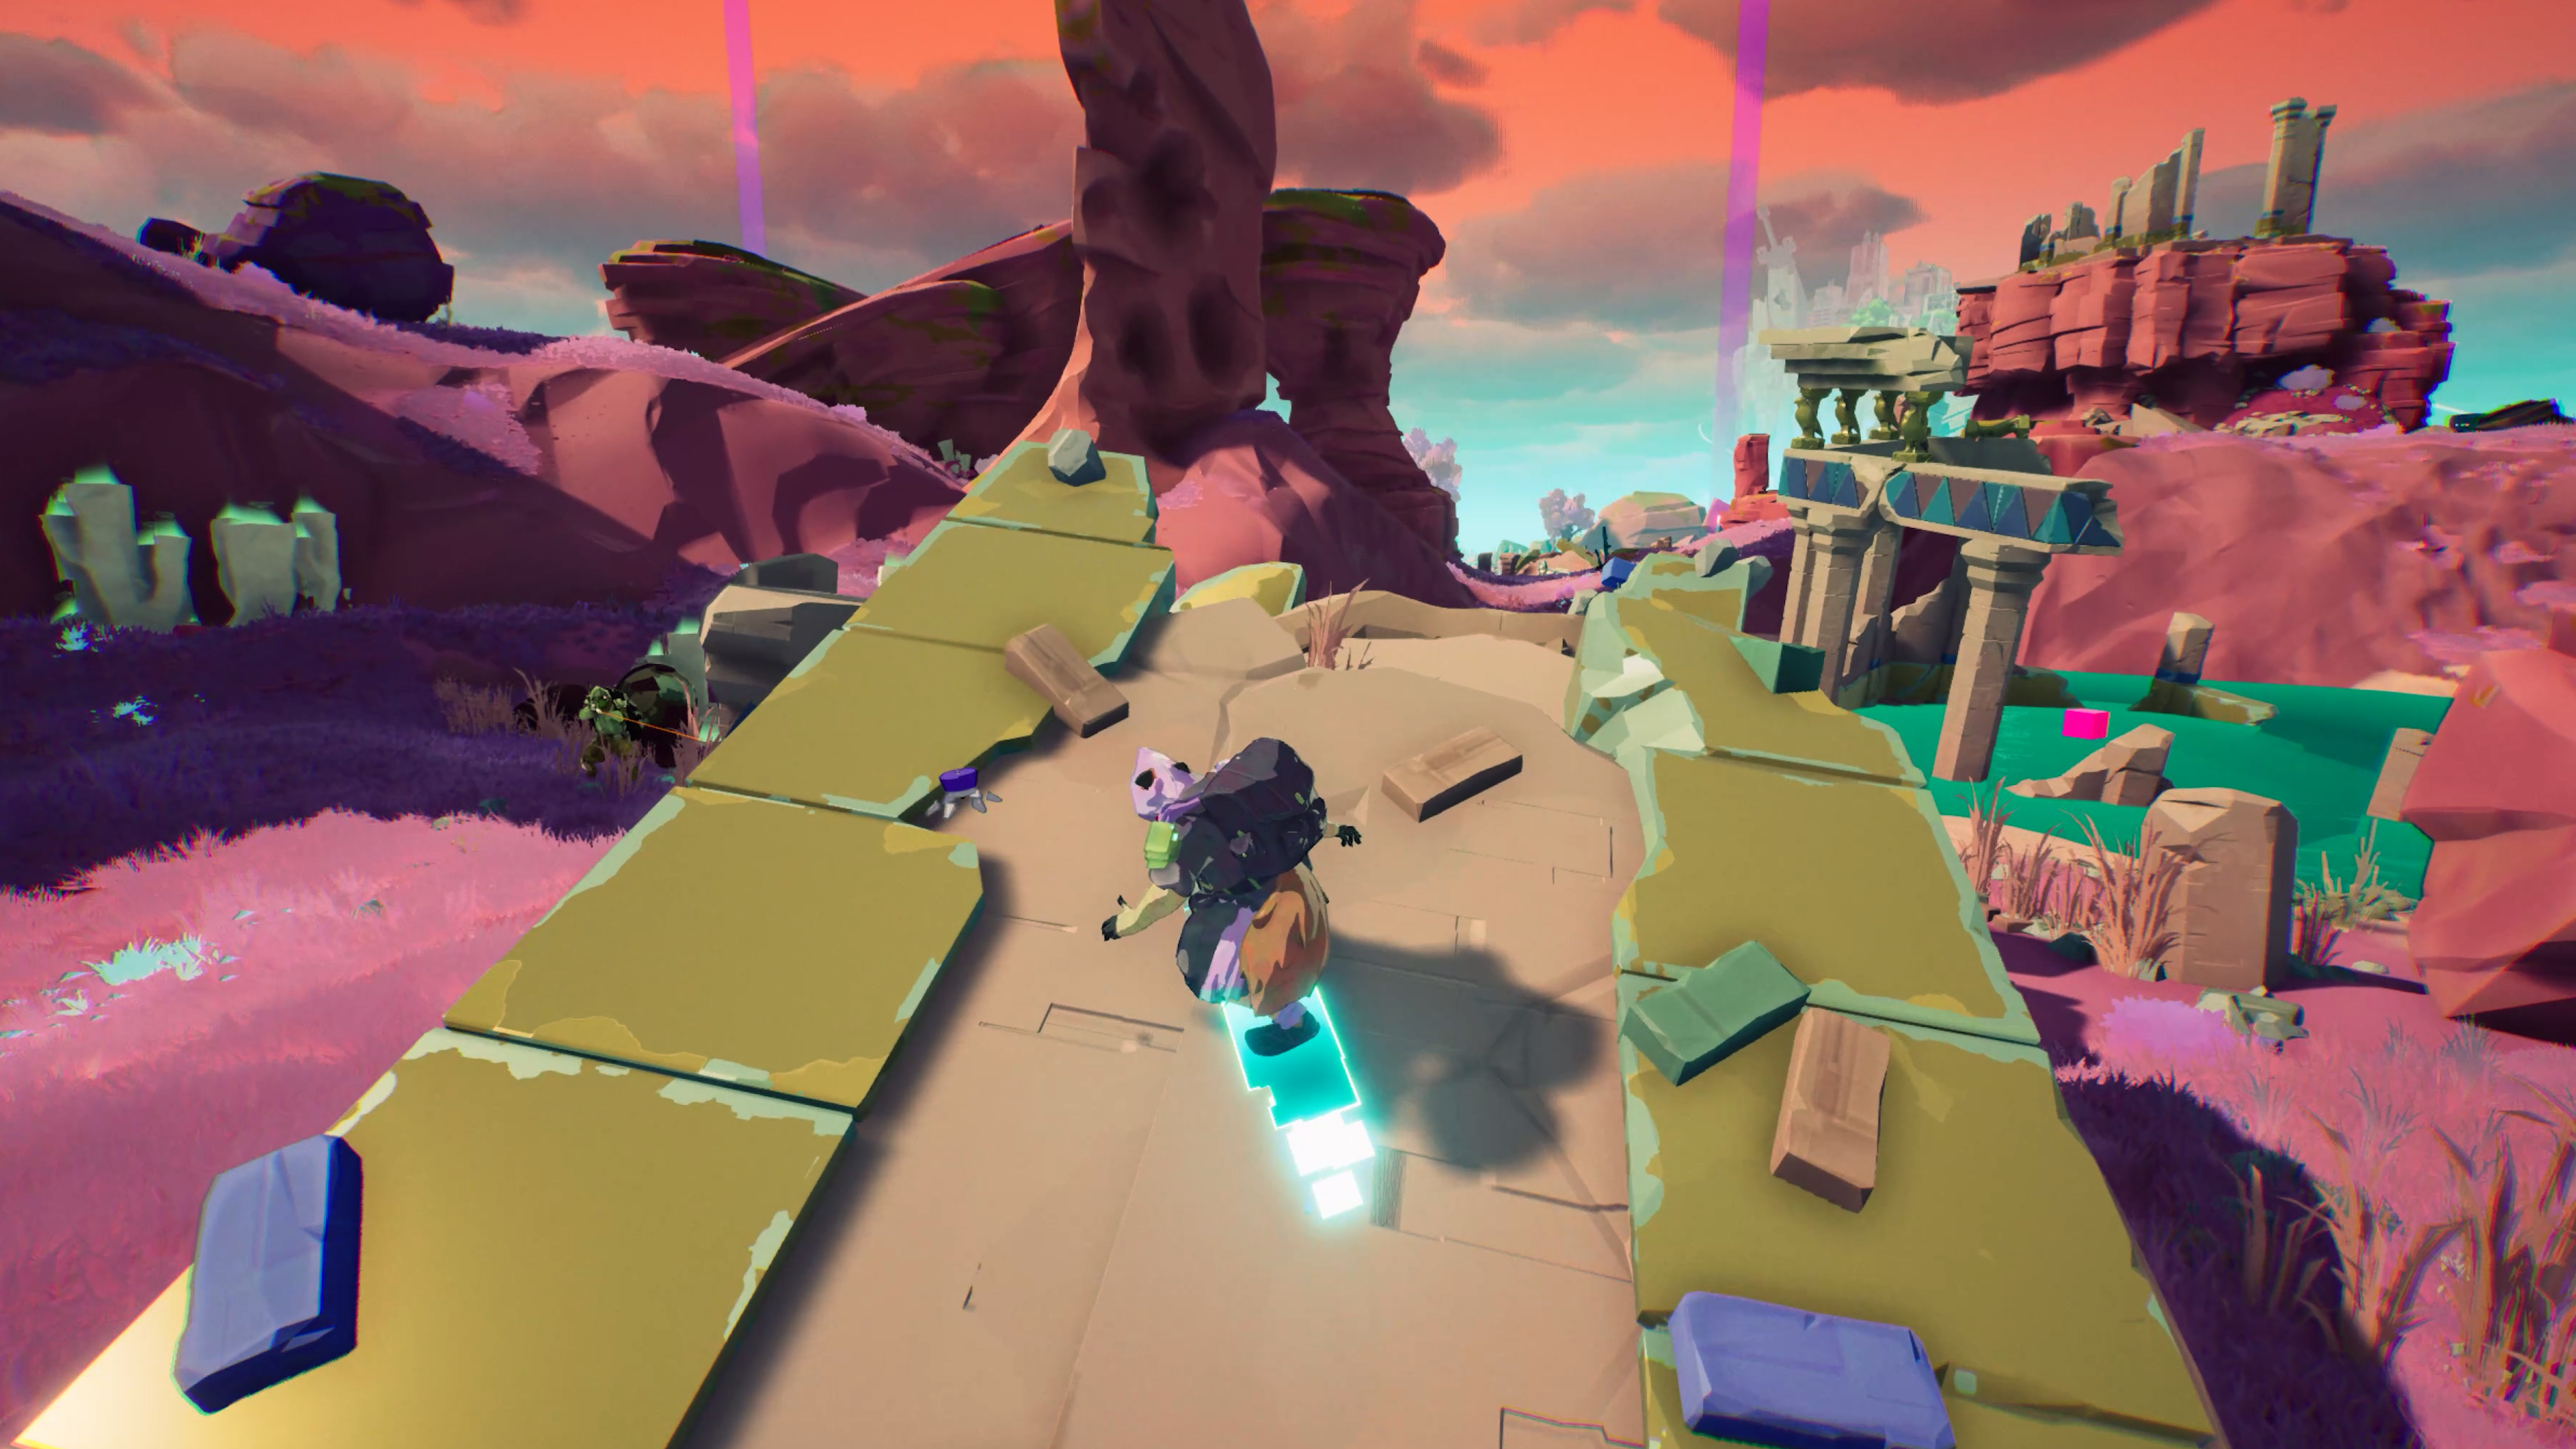 Werbefoto vom kommenden Spiel „Hyper Light Breaker“.  Ein Charakter surft einen zerstörten Teil eines Gebäudes hinunter und ist bereit, vom Ende zu springen.  Im Hintergrund sind Wüstengelände und Ruinen zu sehen.